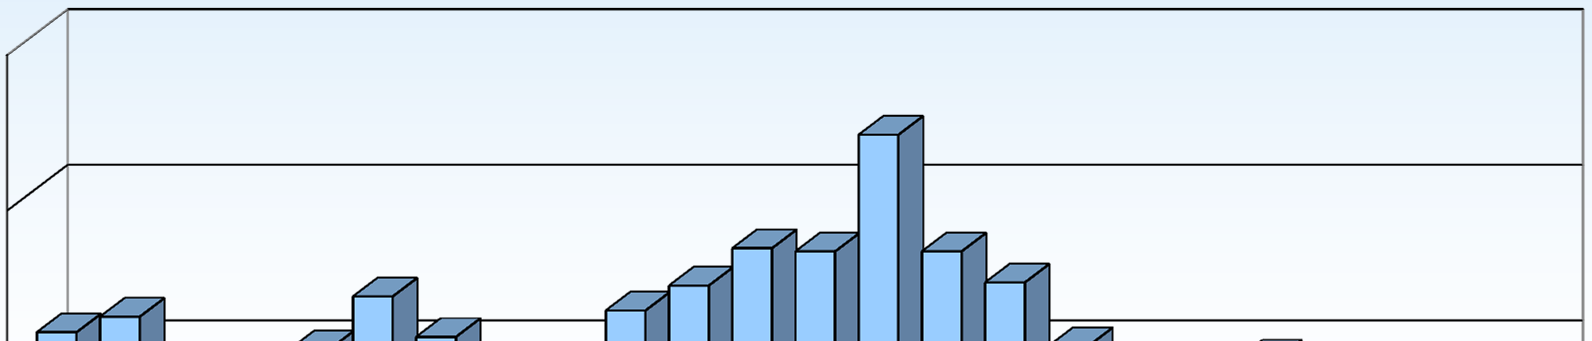 REACH-CLP Helpdesk in Zahlen (2009 2011) 400 Helpdesk Anfragen